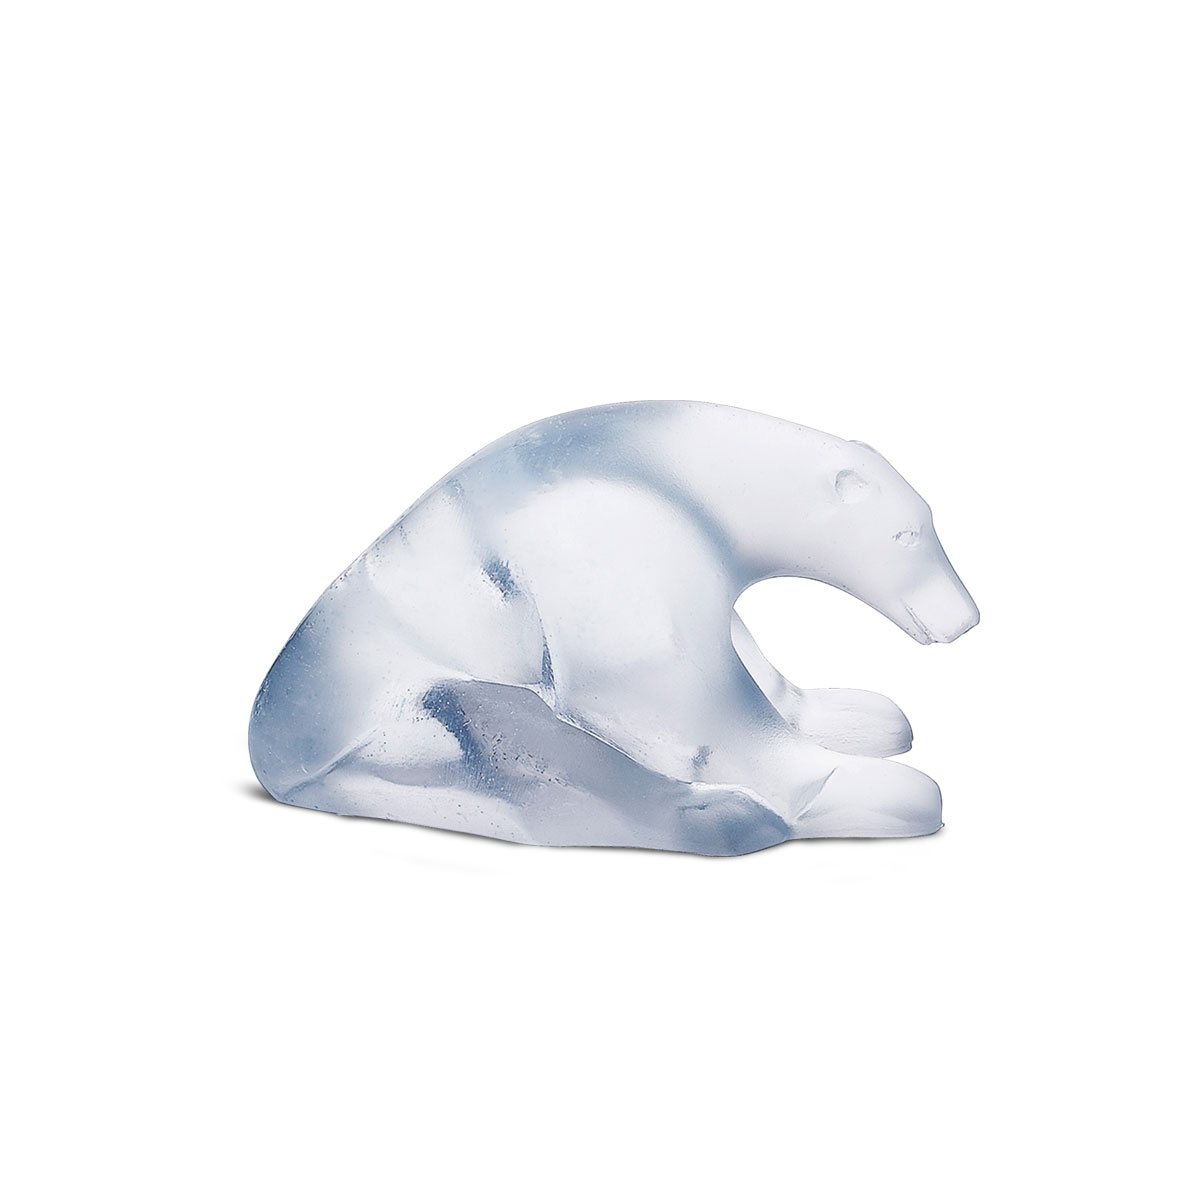 Daum Polar Bear Sculpture